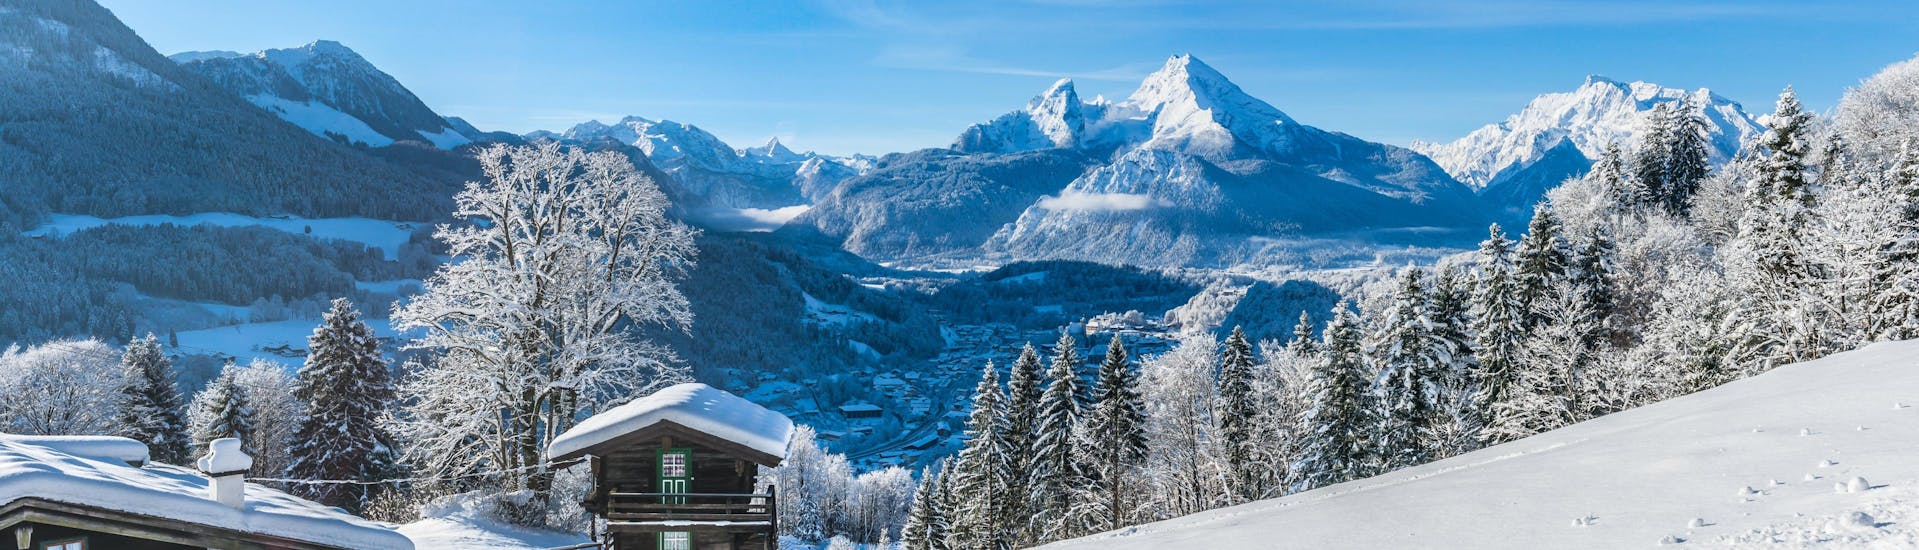 Ein Blick über die verträumte Winterlandschaft nahe Bischofswiesen - Götschen im Berchtesgadener Land, einem beliebten deutschen Skigebiet in dem Besucher bei einer der örtlichen Skischulen Skikurse buchen können.